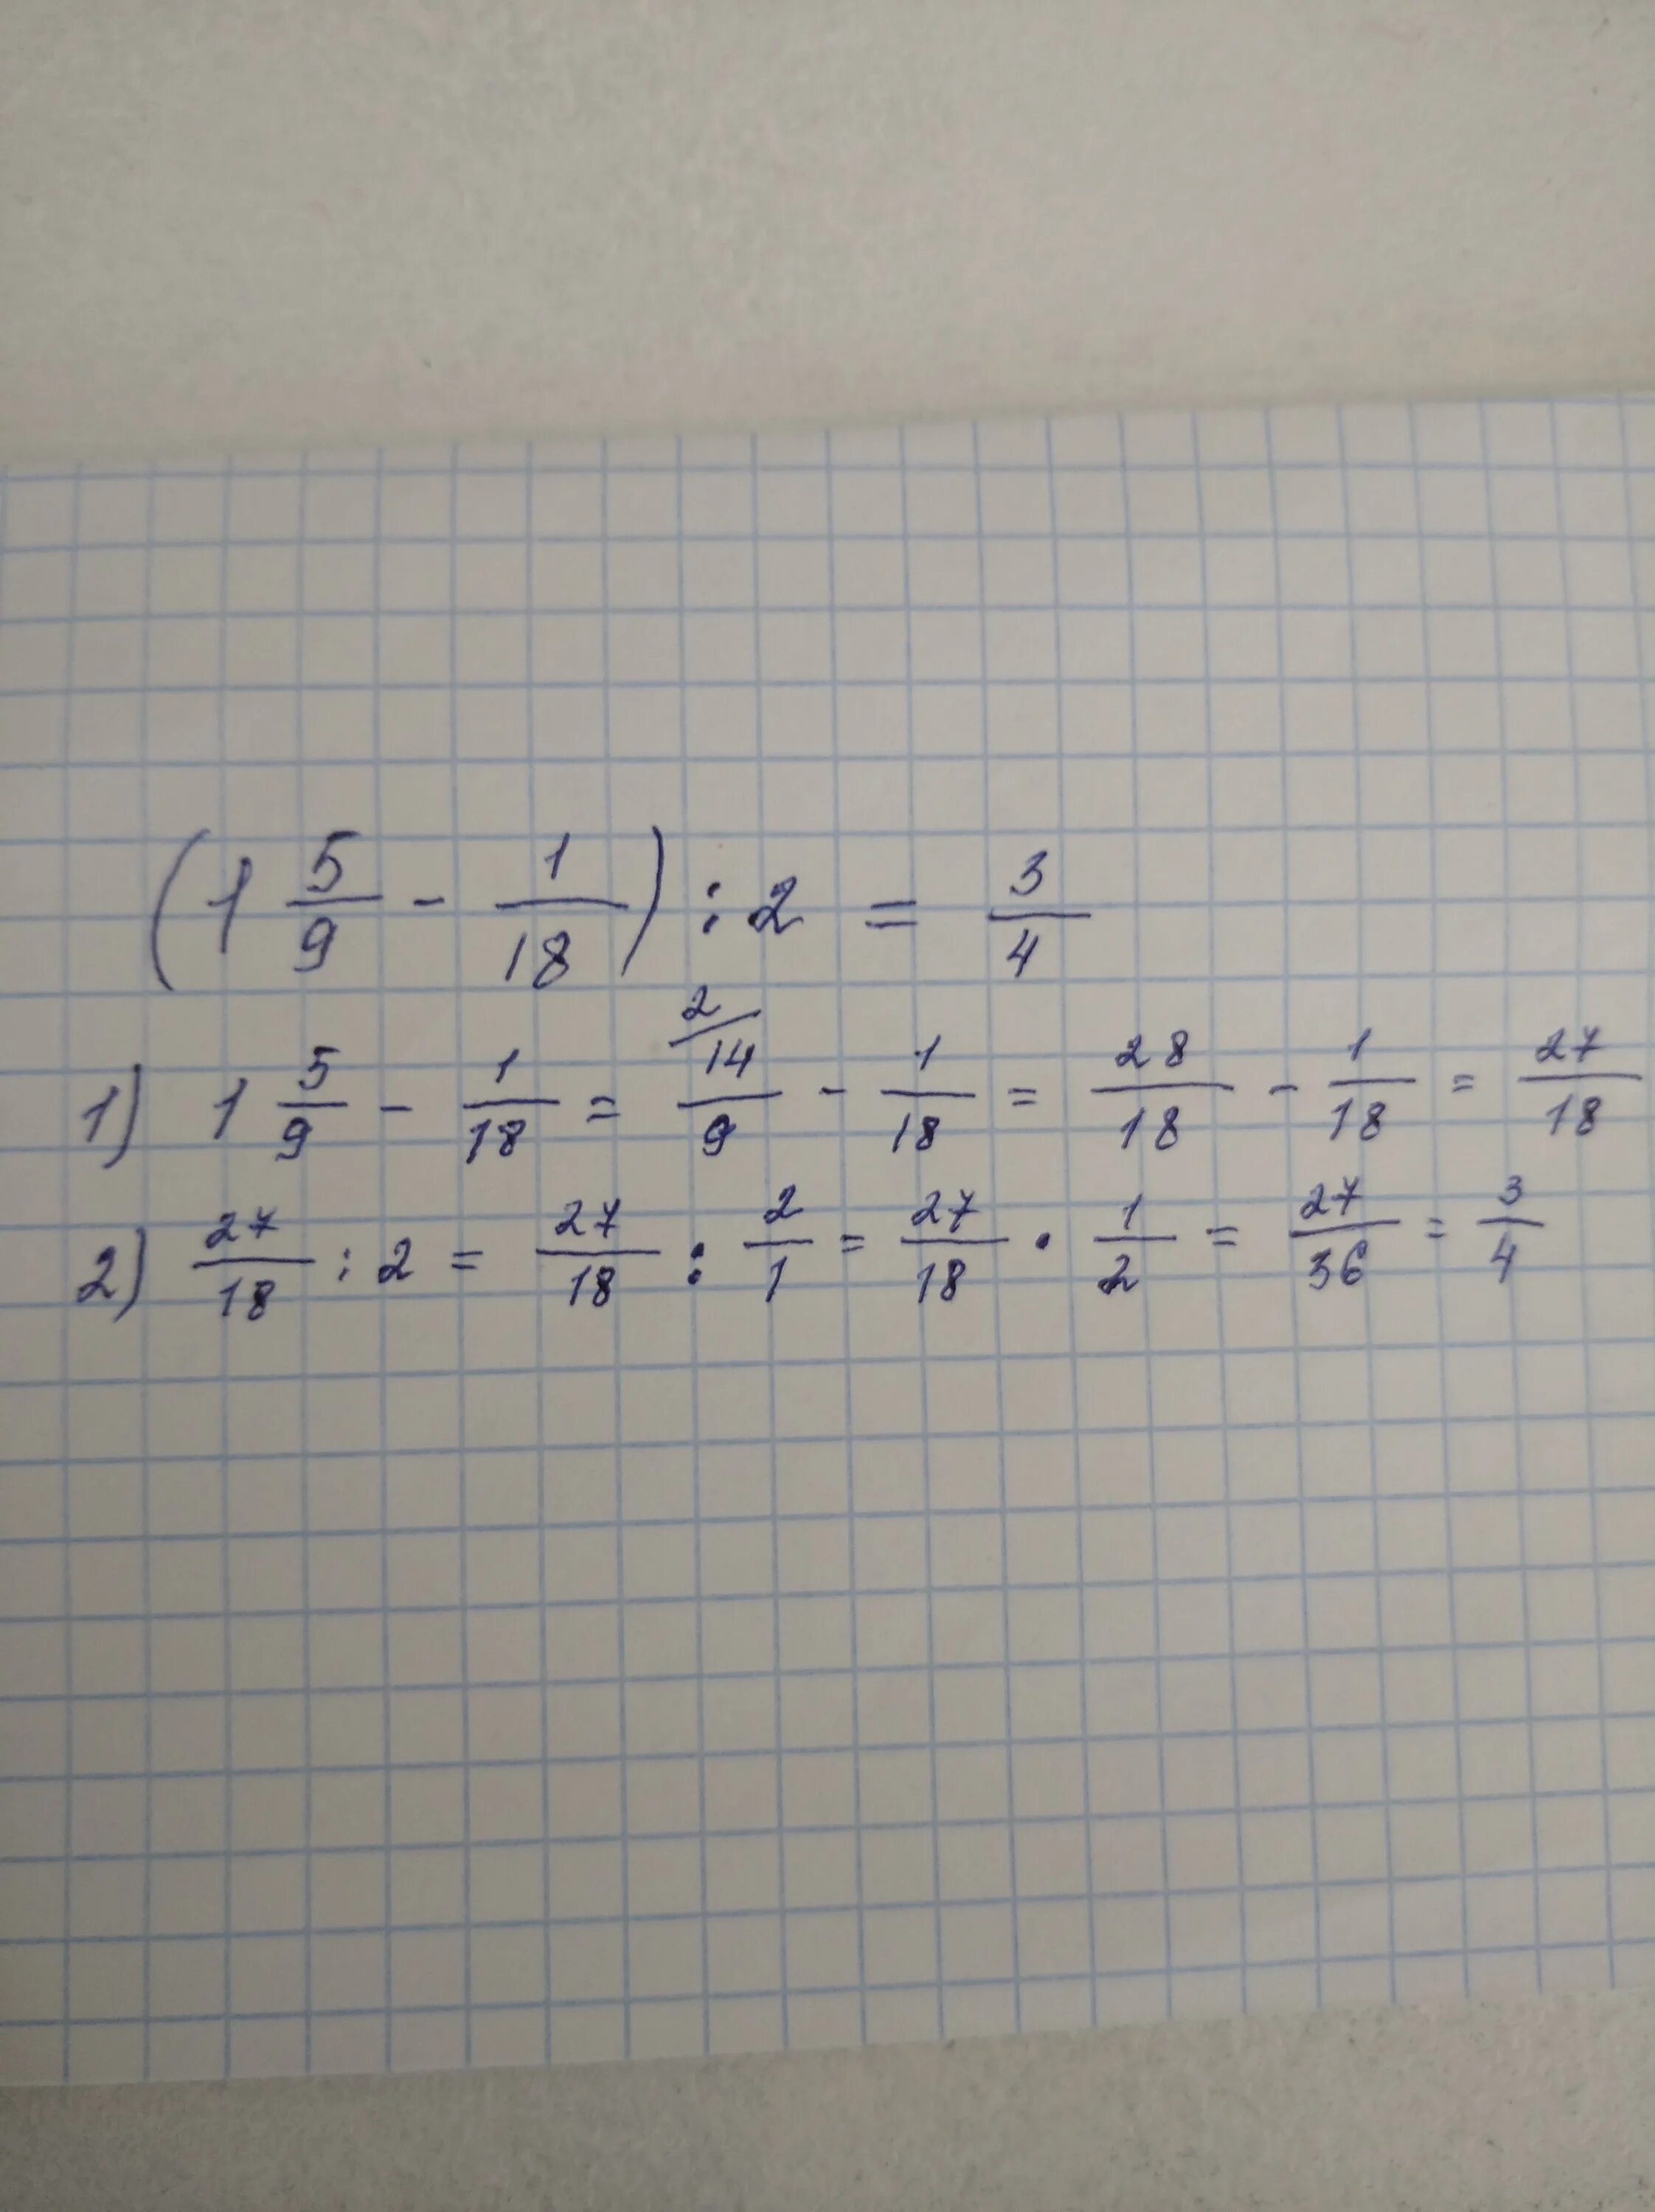 39 57 27 18. 17+(27+18)/2 Решение. Как решить пример (39-57):(27-18). 18:27 Решение.